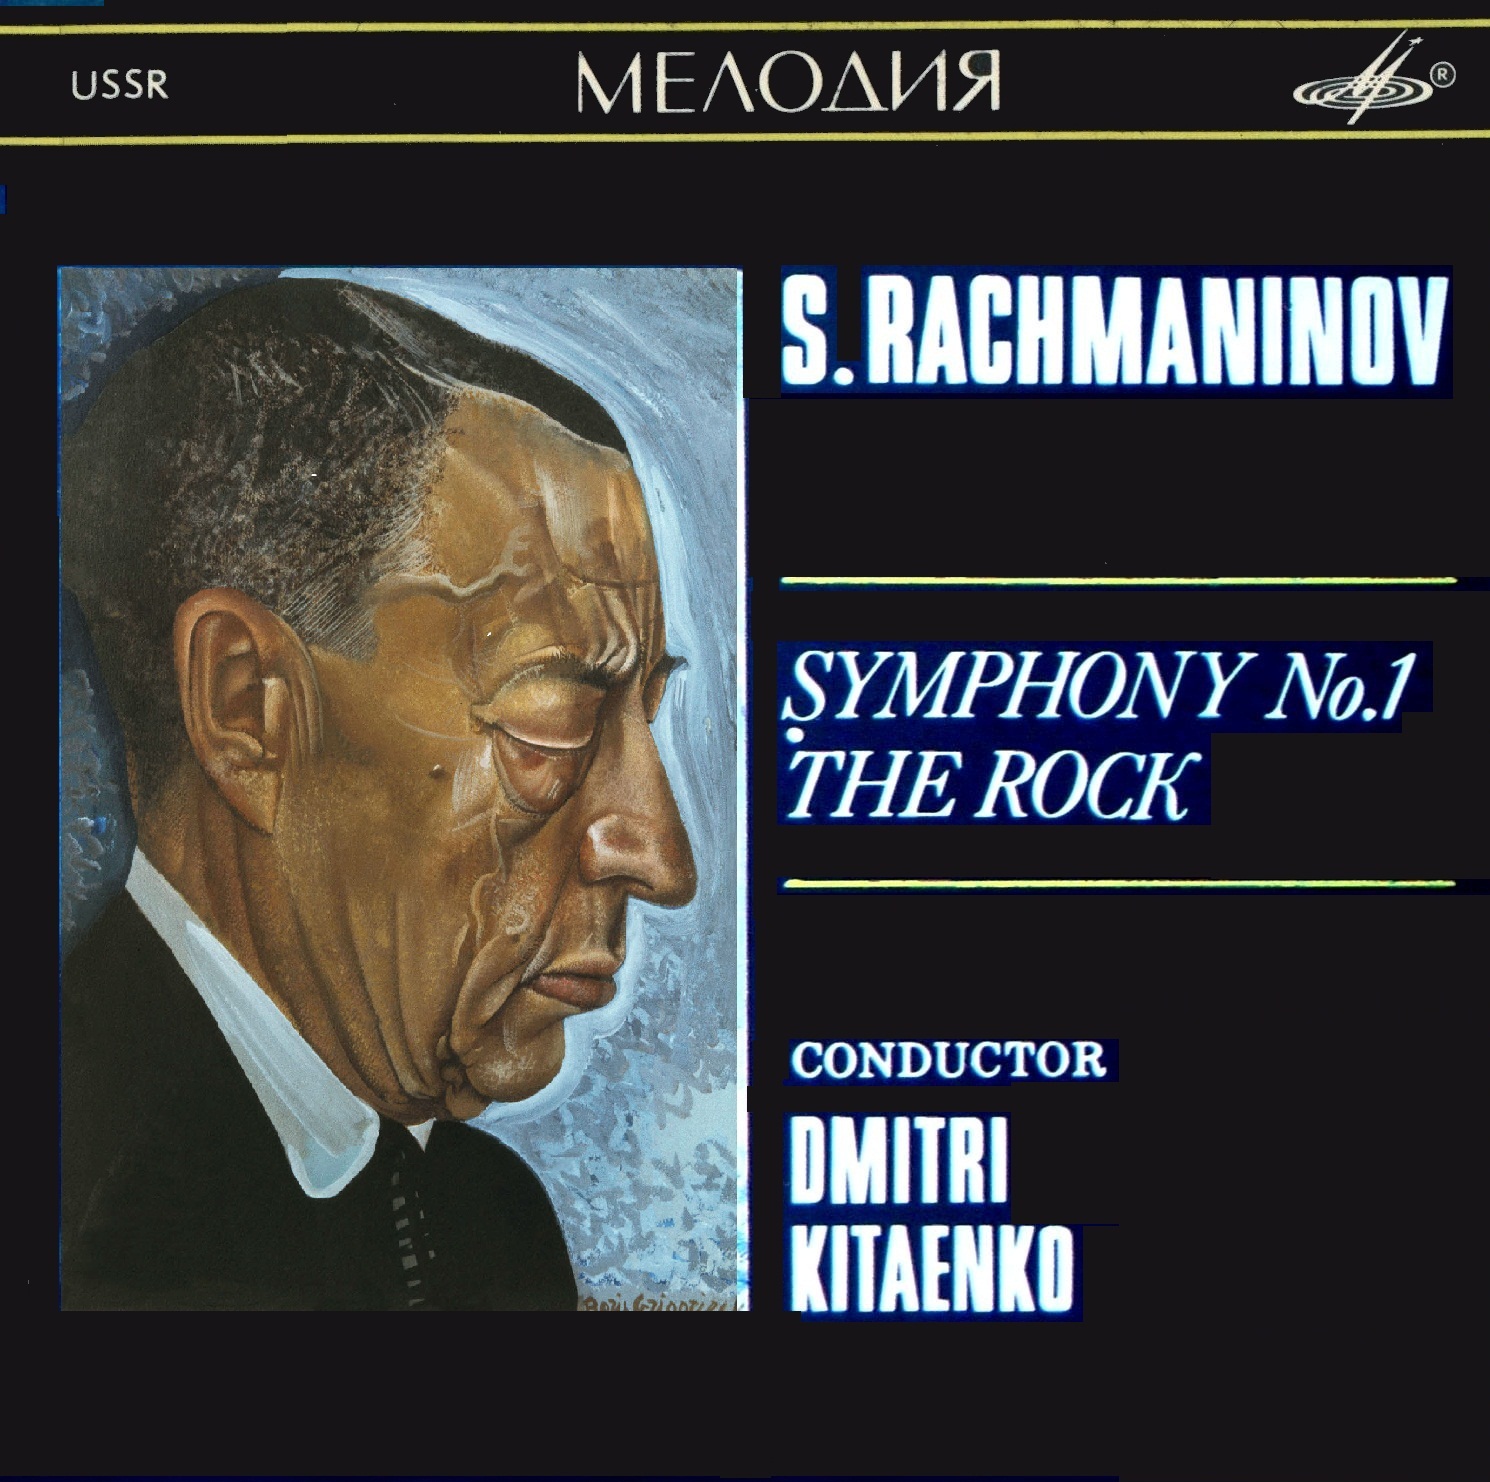 С. РАХМАНИНОВ (1873-1943): Симфония № 1 ре минор, соч. 13; «Утес», фантазия, соч. 7